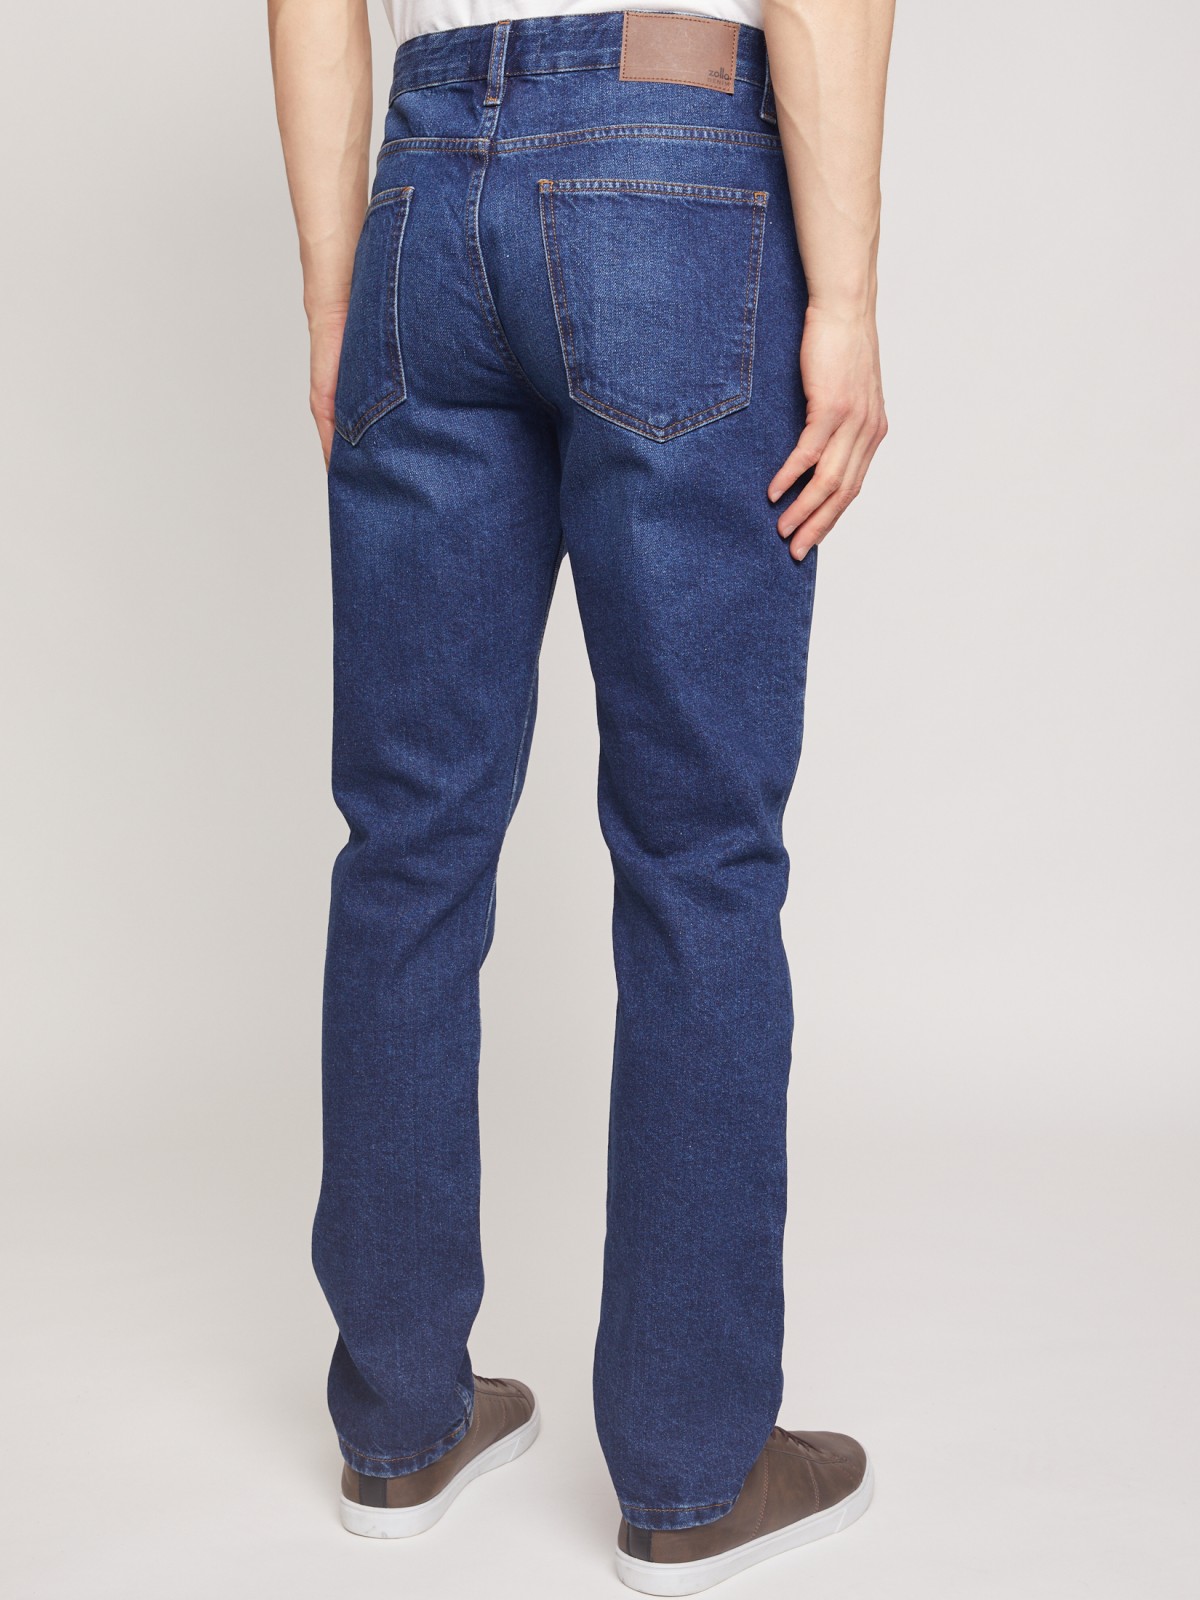 Брюки джинсовые zolla 01111710G022, цвет синий, размер 30 - фото 4